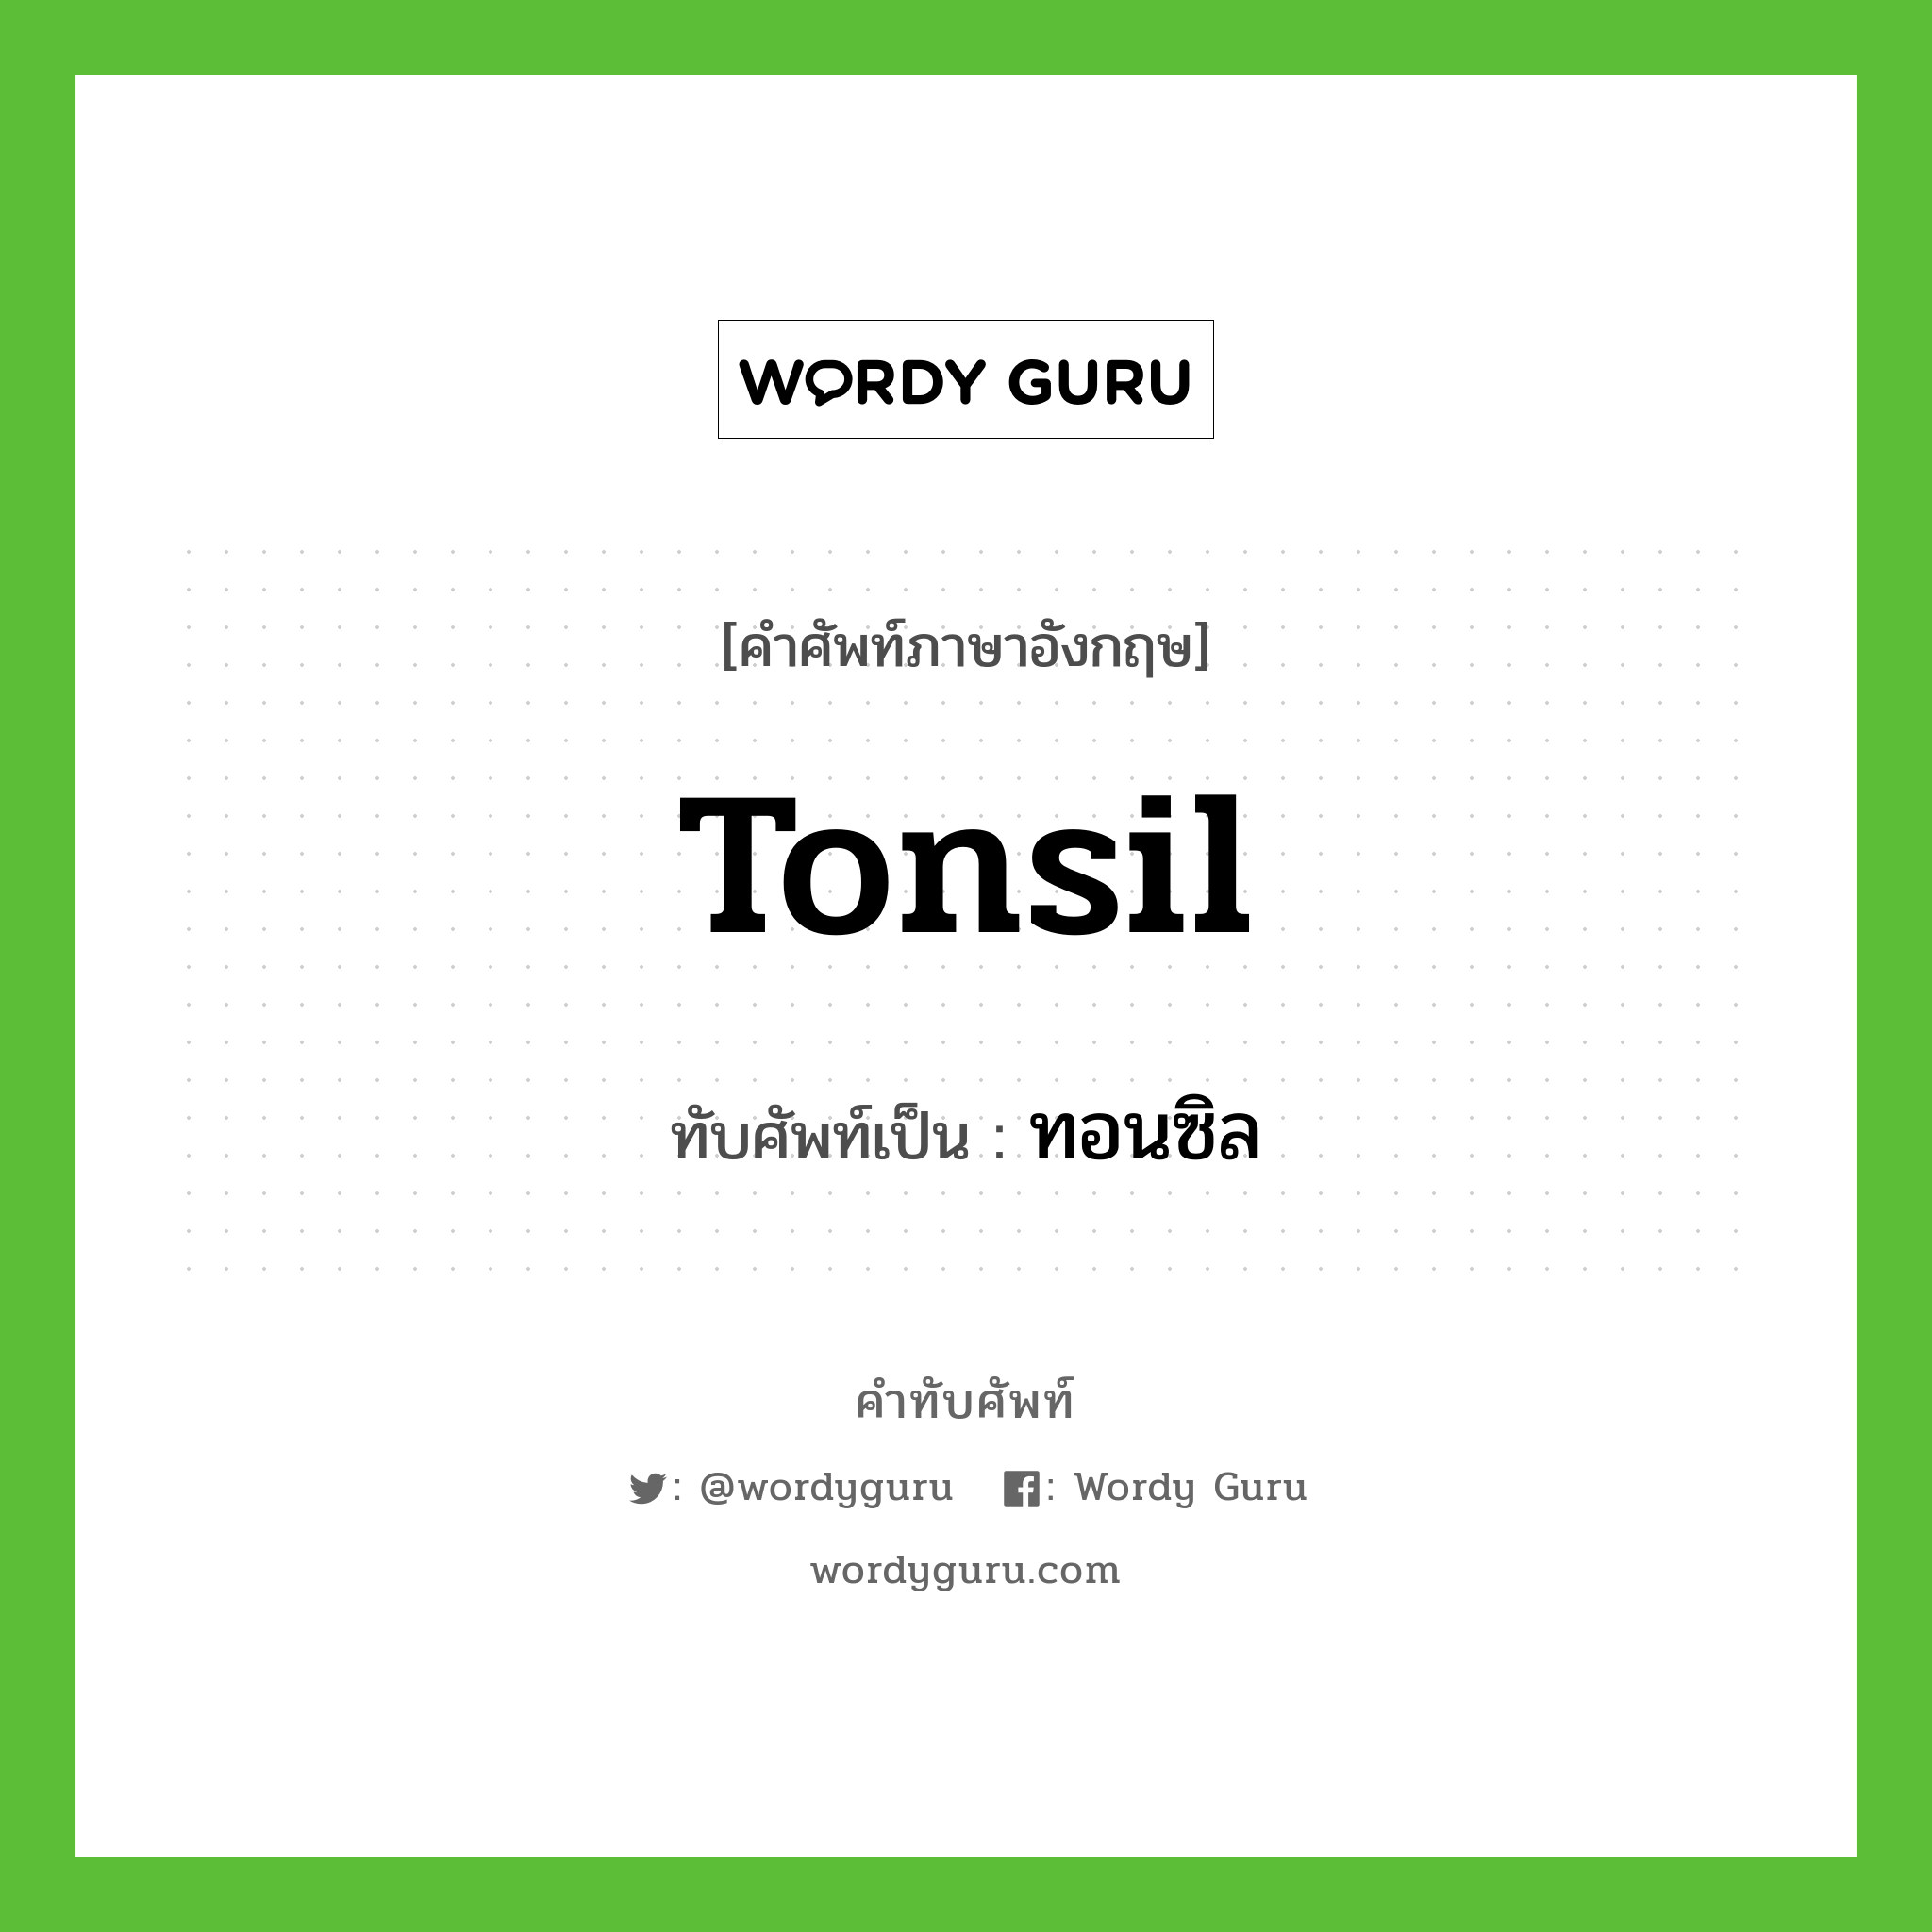 tonsil เขียนเป็นคำไทยว่าอะไร?, คำศัพท์ภาษาอังกฤษ tonsil ทับศัพท์เป็น ทอนซิล